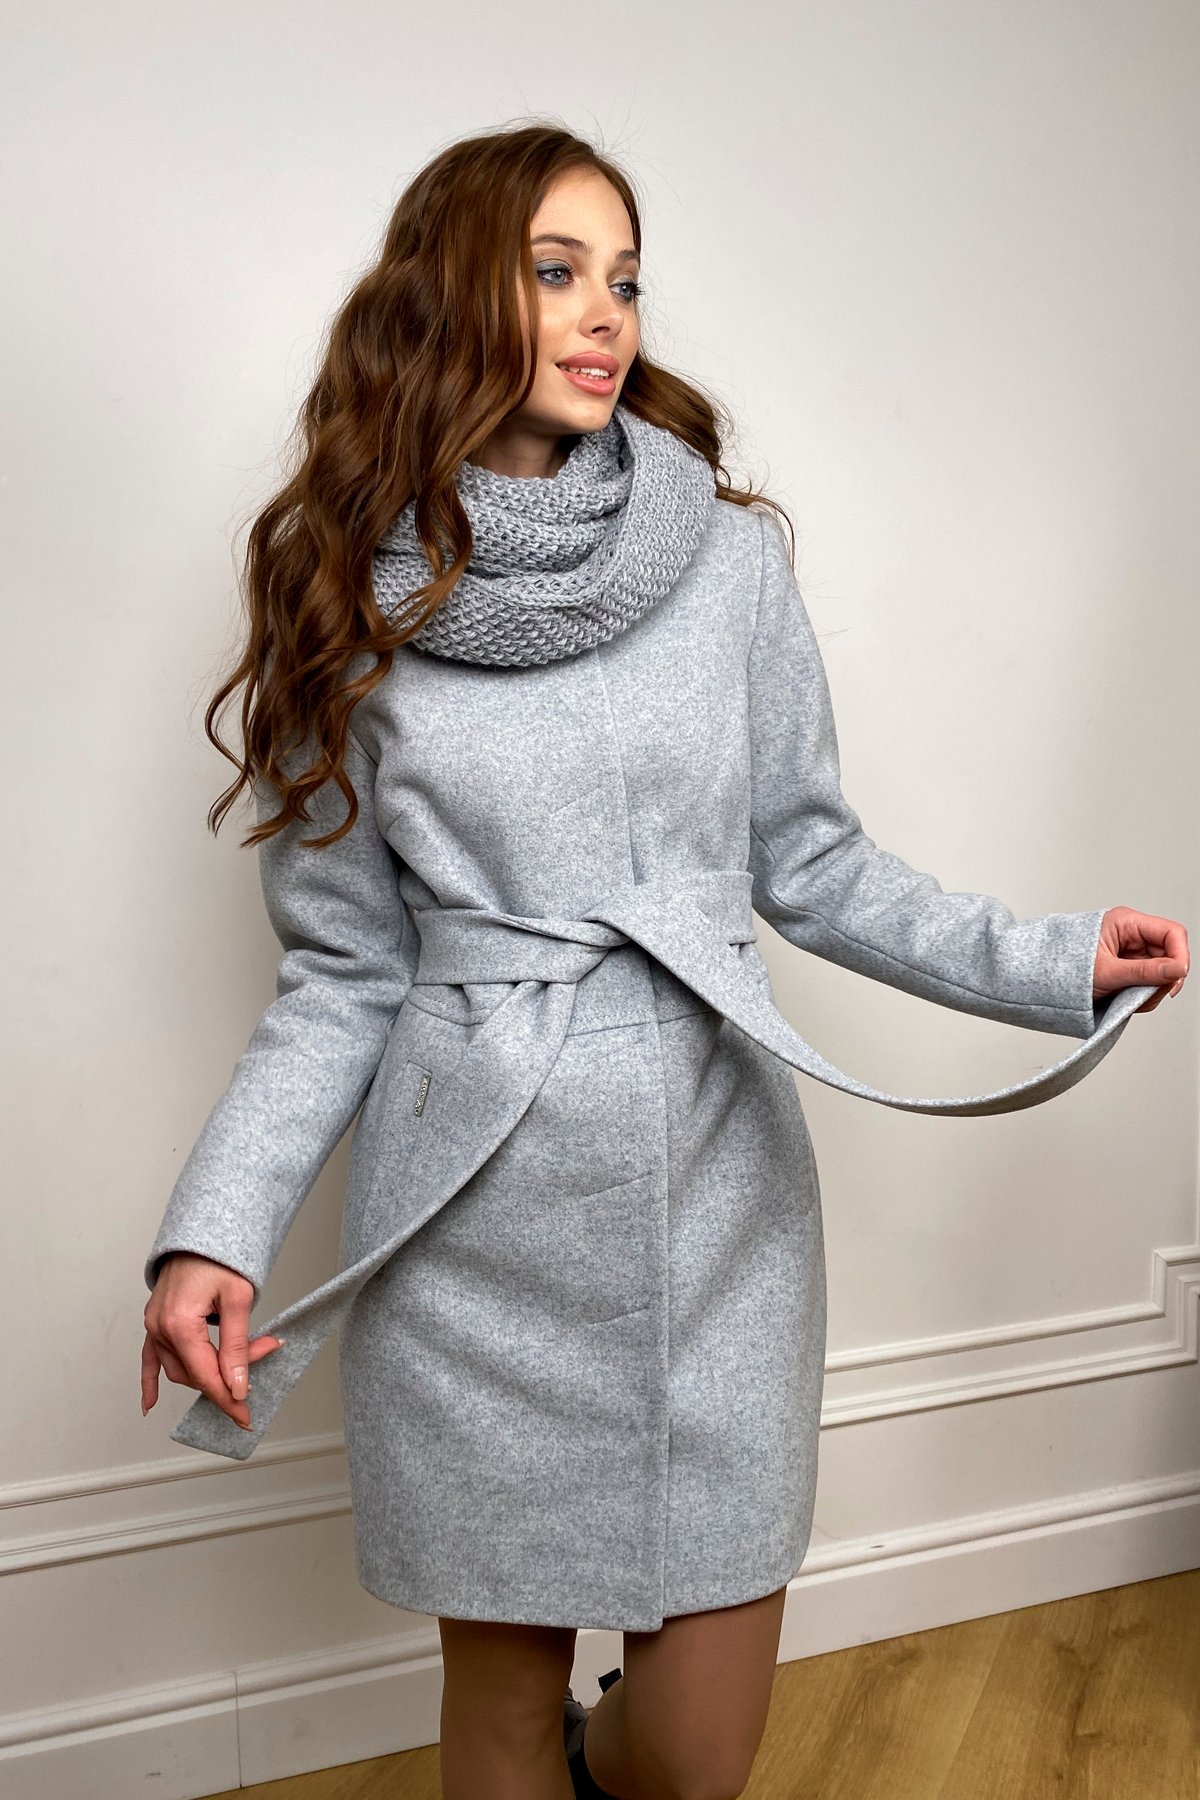 Пальто женское зимнее Габи 8295 с шарфом-трубой АРТ. 44406 Цвет: Серый Светлый 33 - фото 1, интернет магазин tm-modus.ru